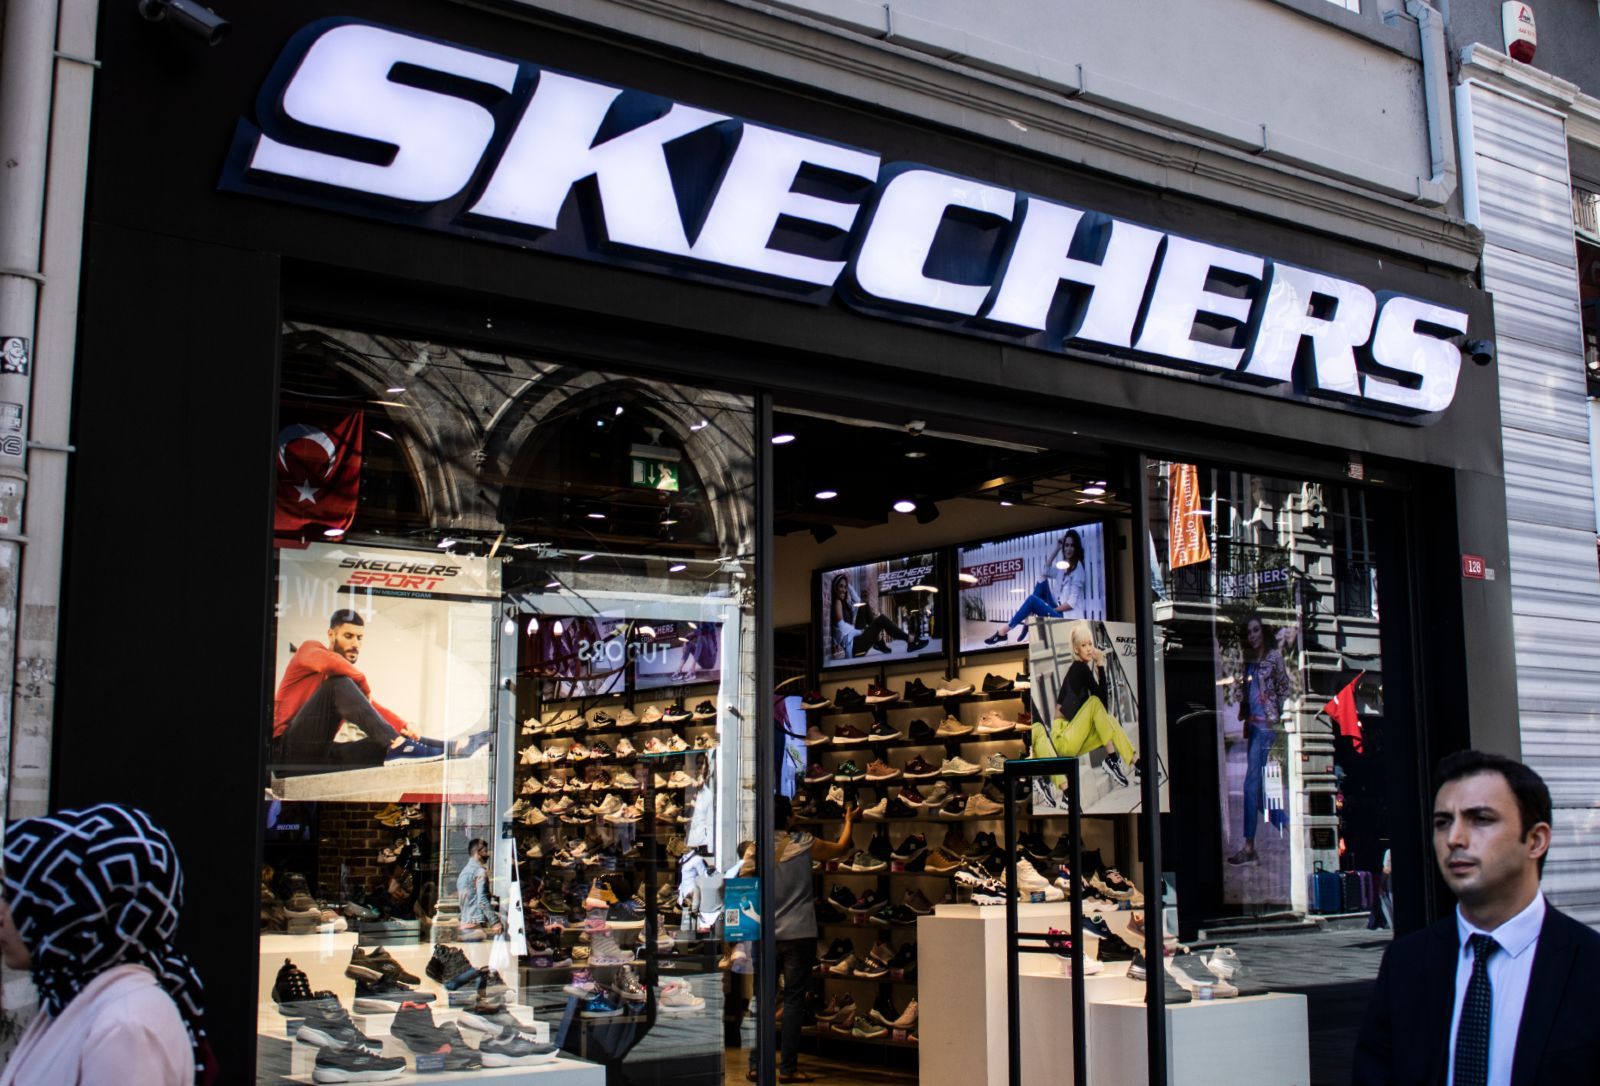 El fabricante de zapatillas luminosas Skechers presenta una petición desestimar demanda colectiva - Top Class Actions